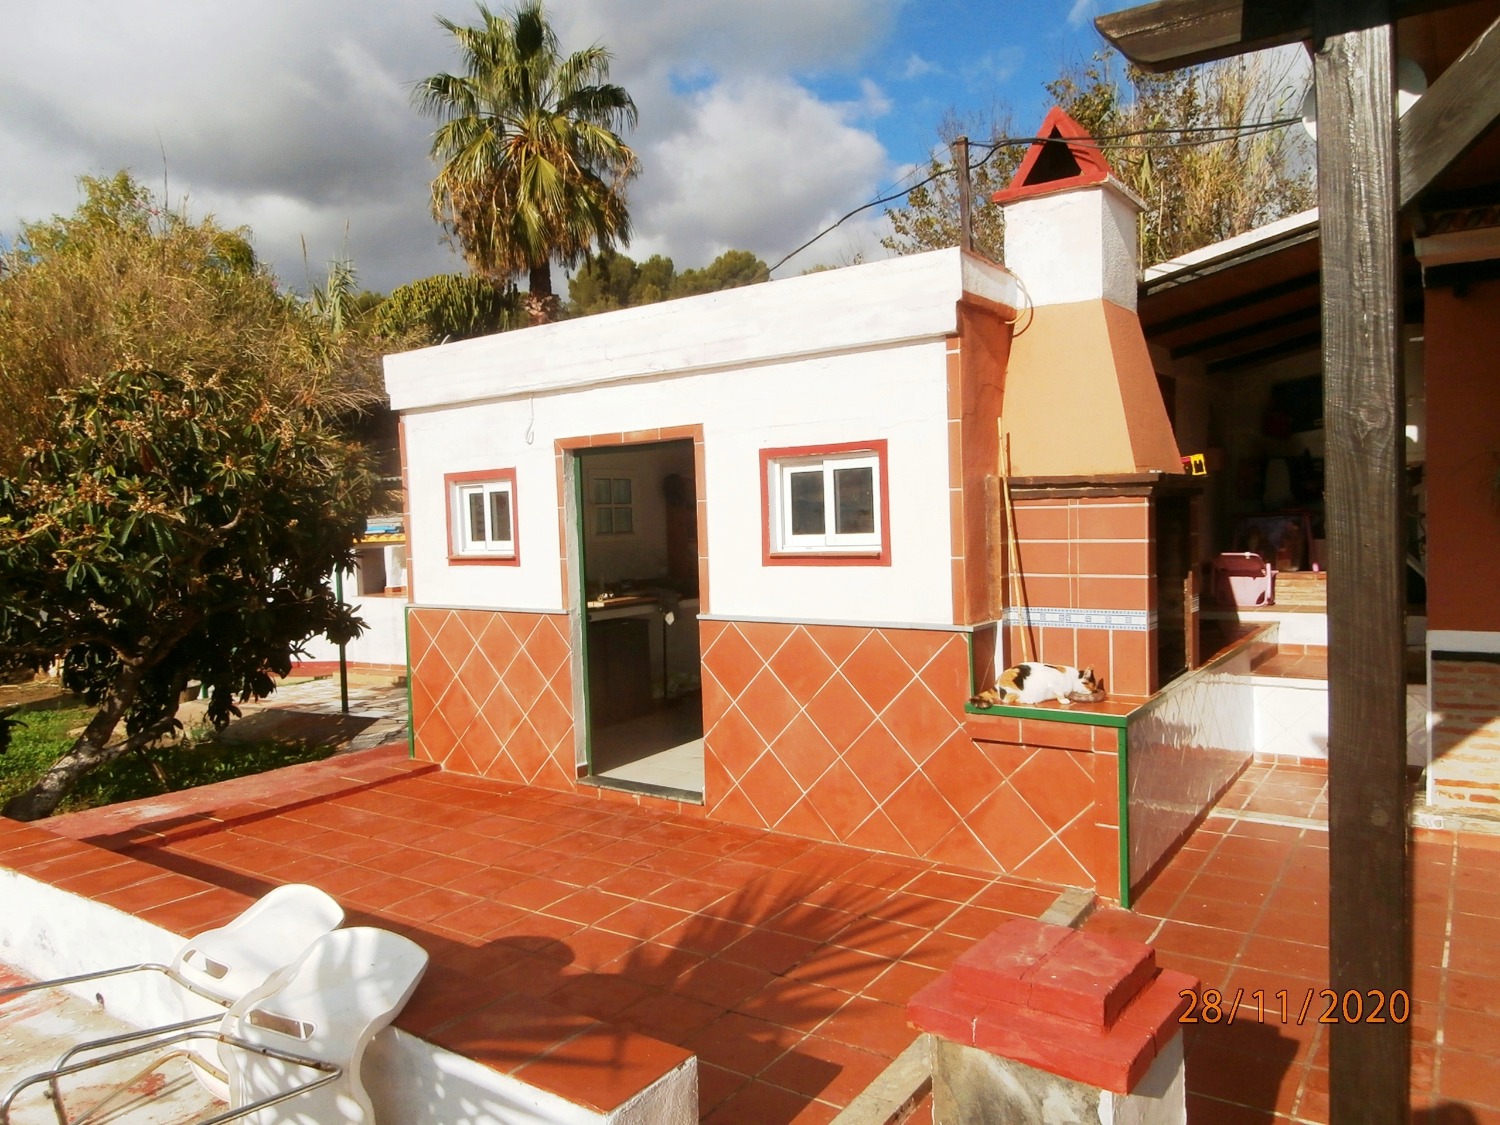 Groot halfvrijstaand landhuis in Andalusische stijl met zwembad, bouwland, volledig omheind ca. 3.220 m2, goede toegang.